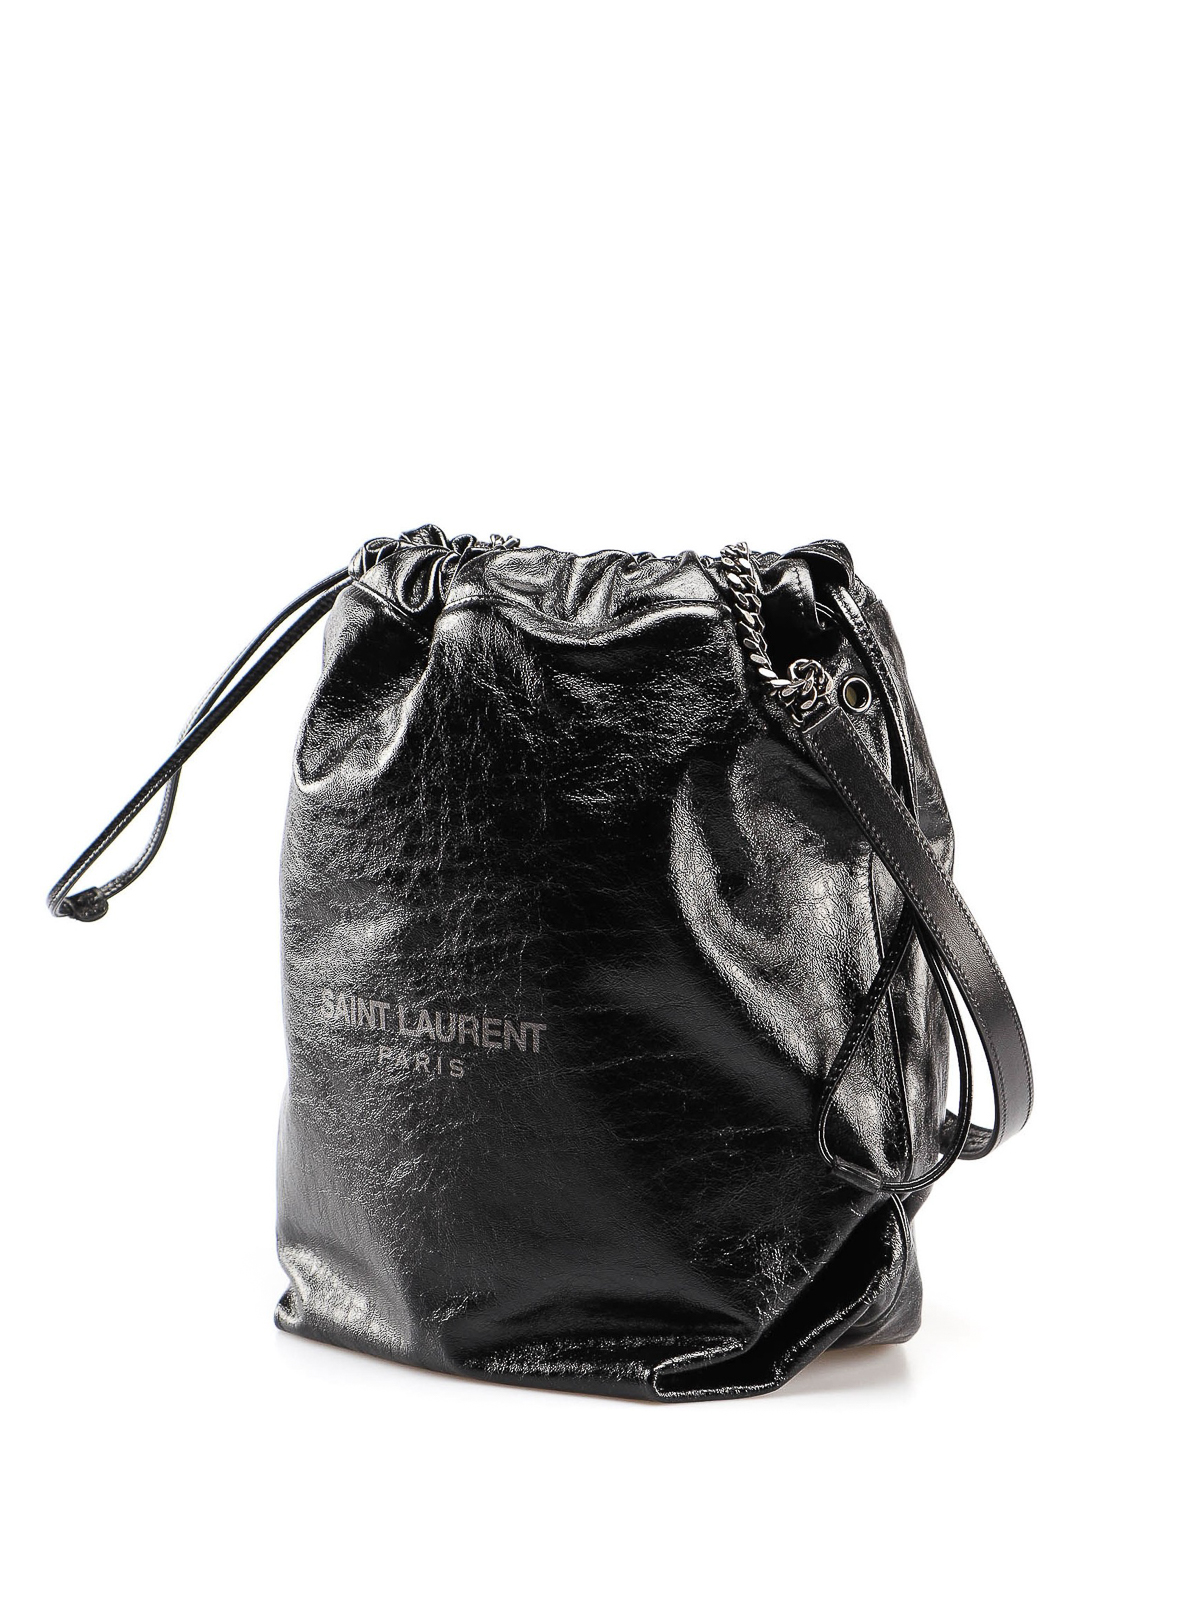 Women's Hobo and Bucket Bags, Saint Laurent